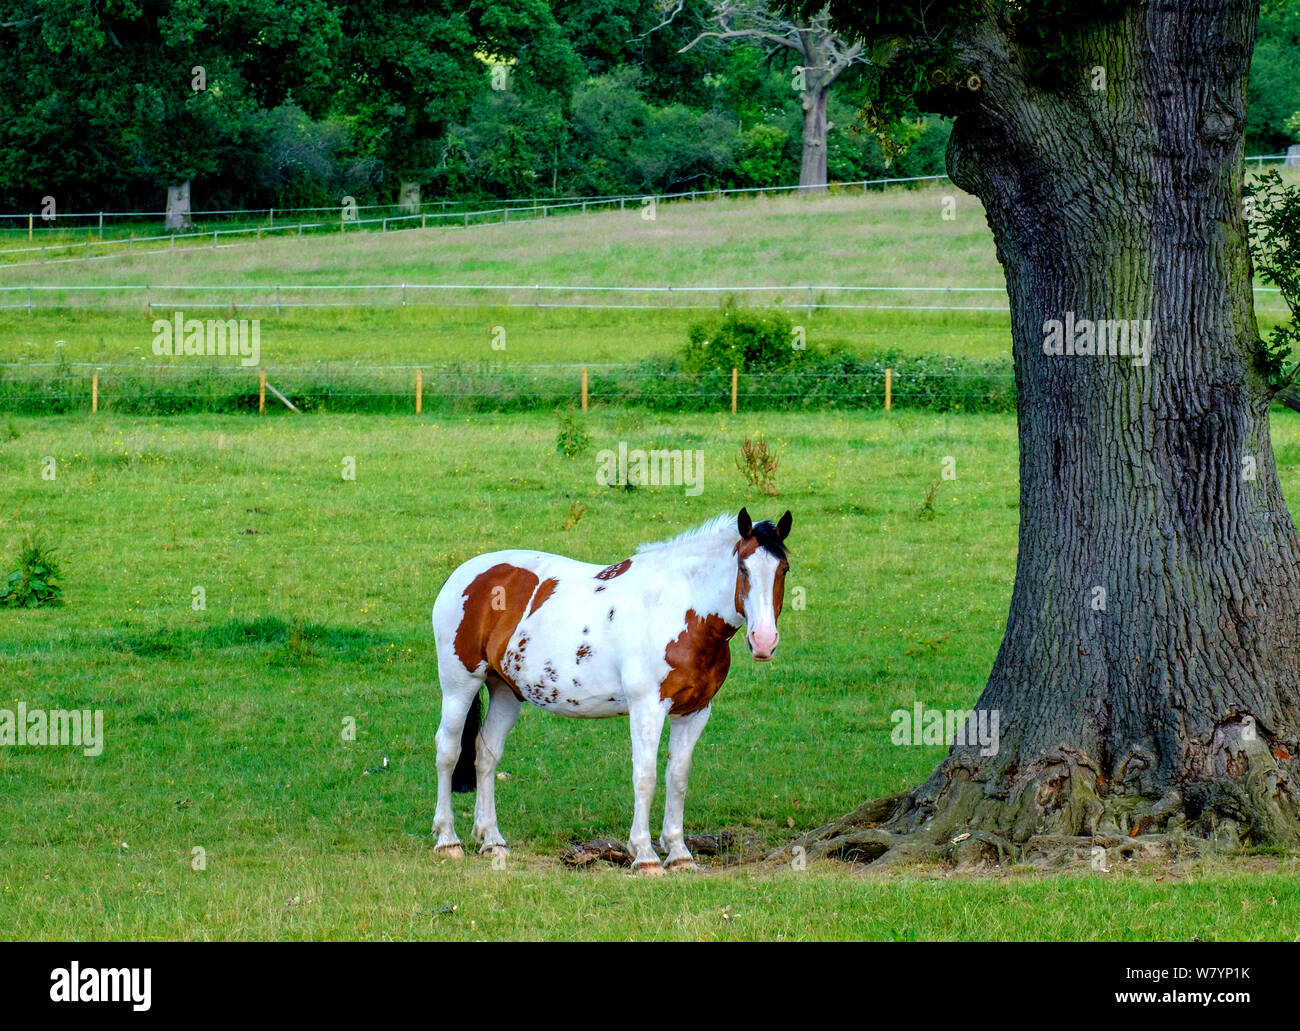 Cheval blanc et marron Pinto avec bald face, debout dans un champ à côté d'un arbre, à Bury Farm, Edgware Grand Londres, Royaume-Uni. Banque D'Images